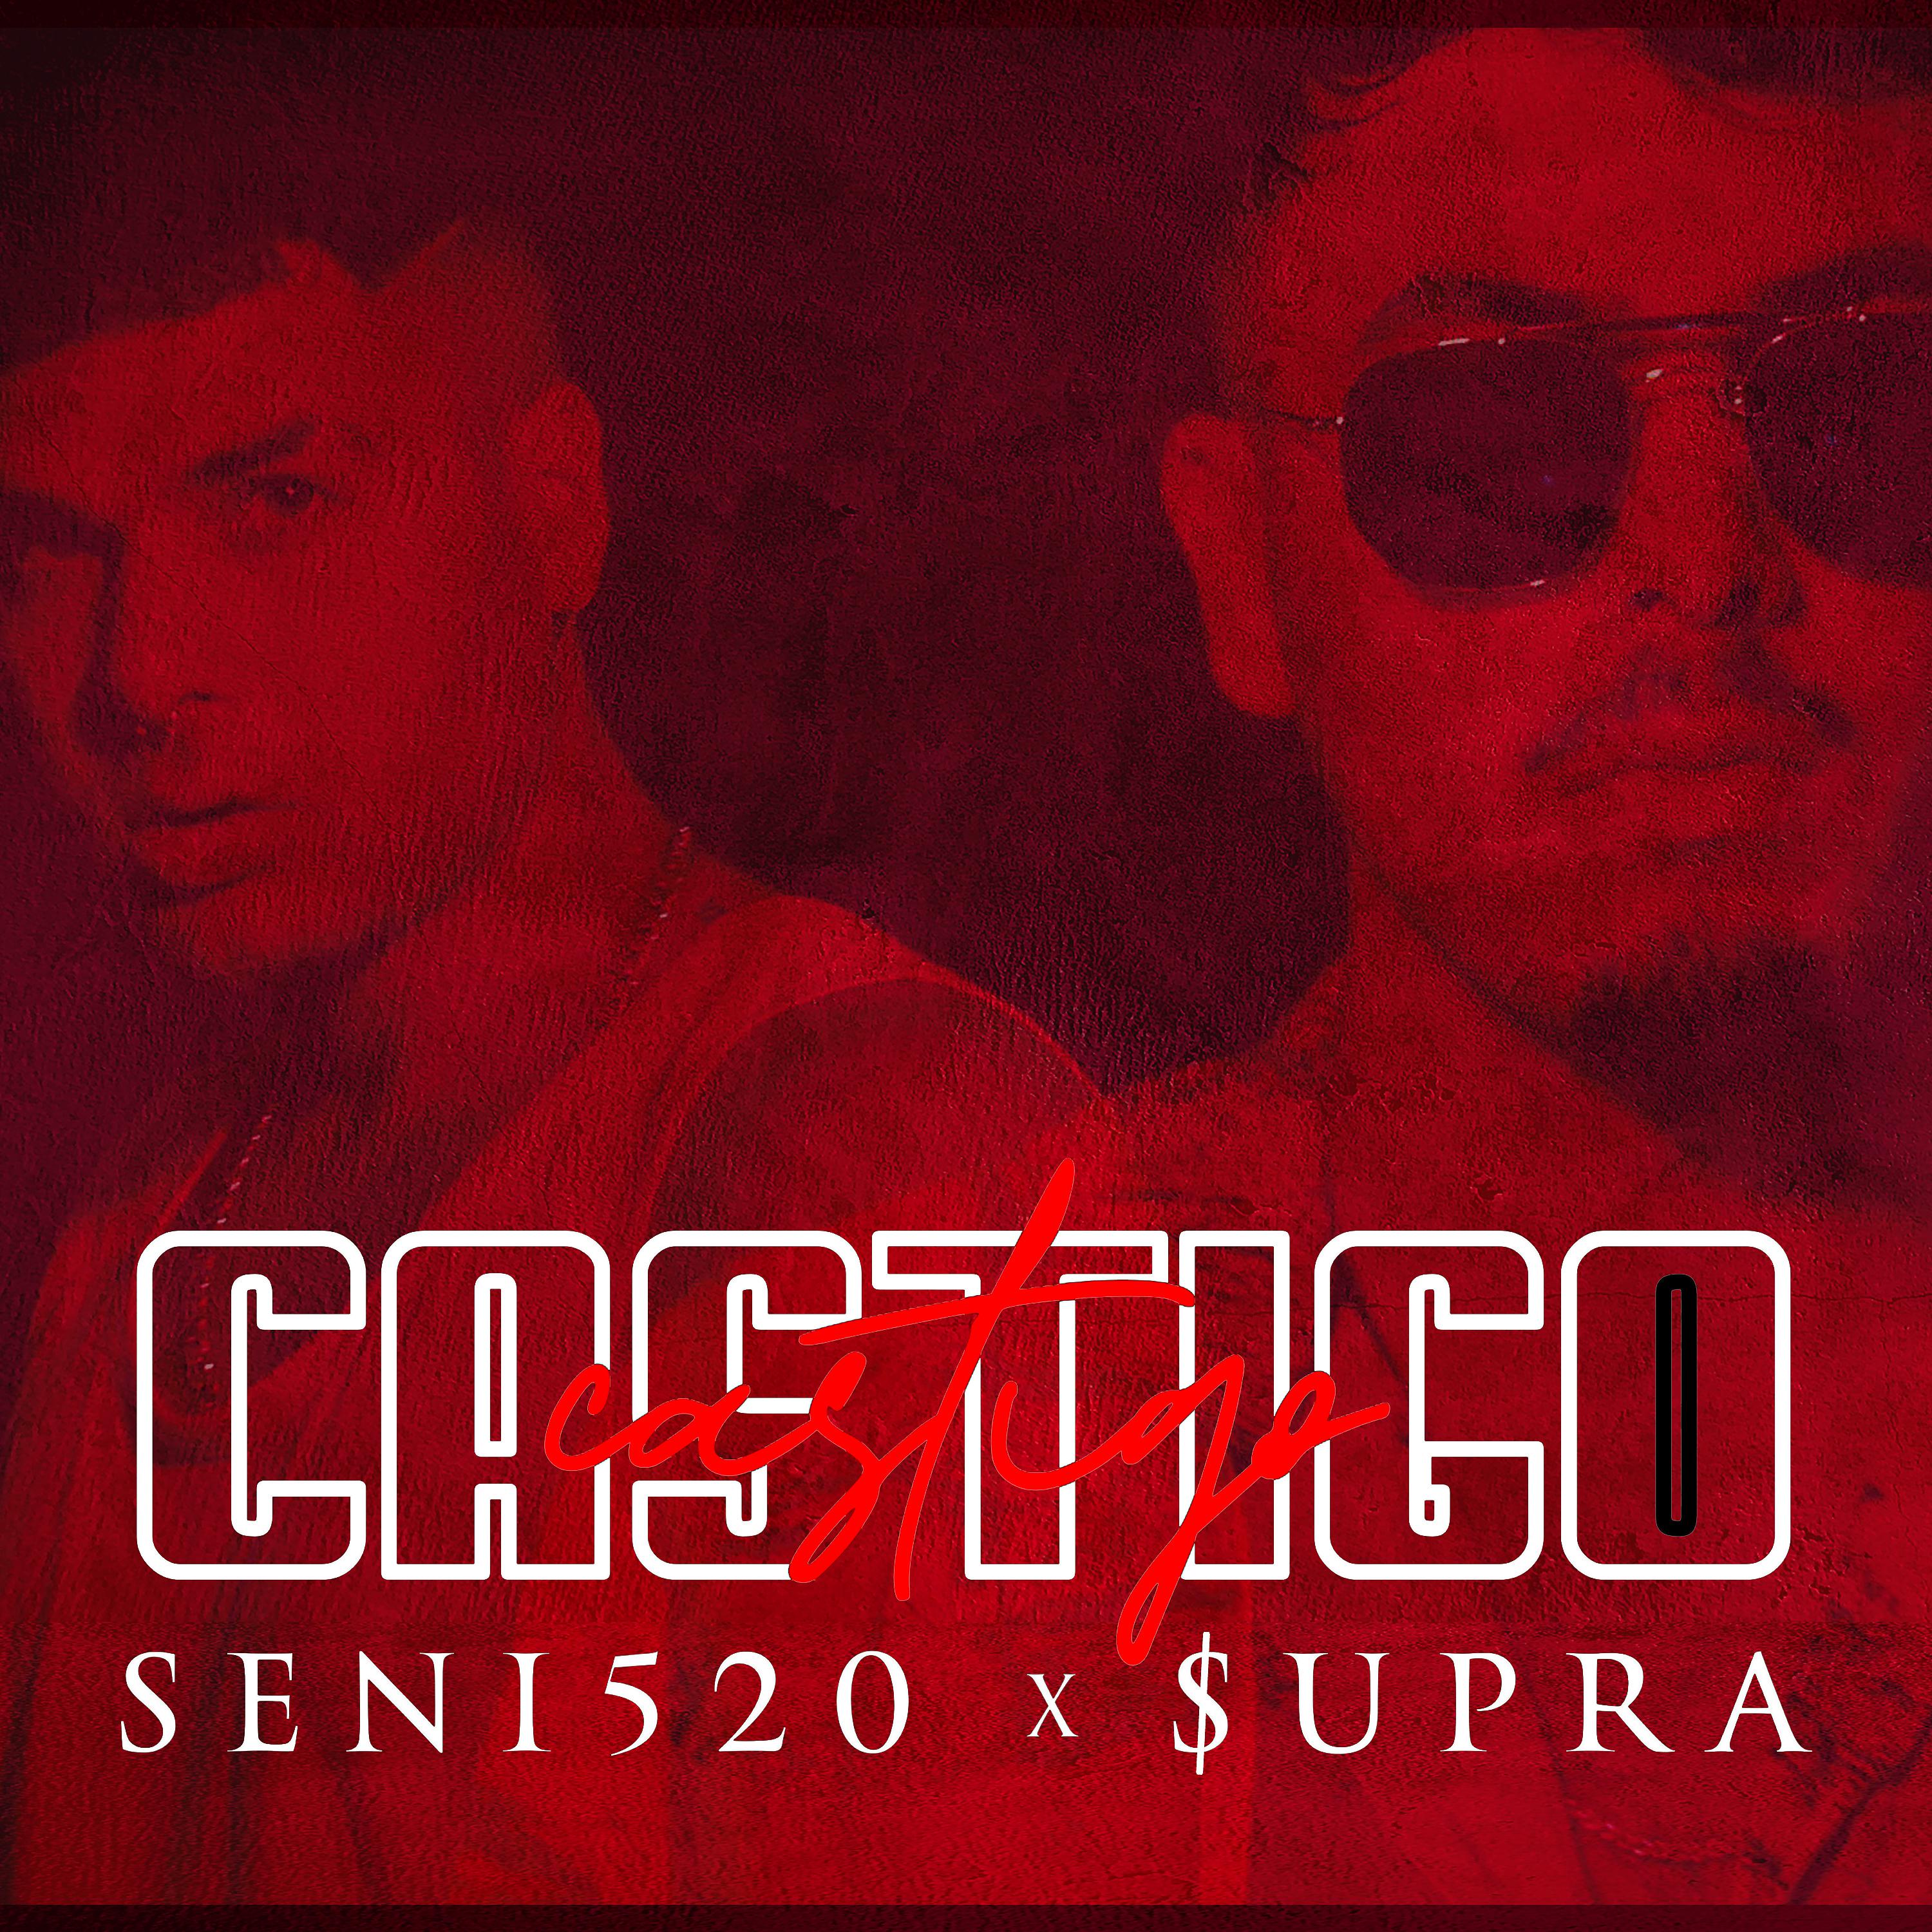 Постер альбома Castigo